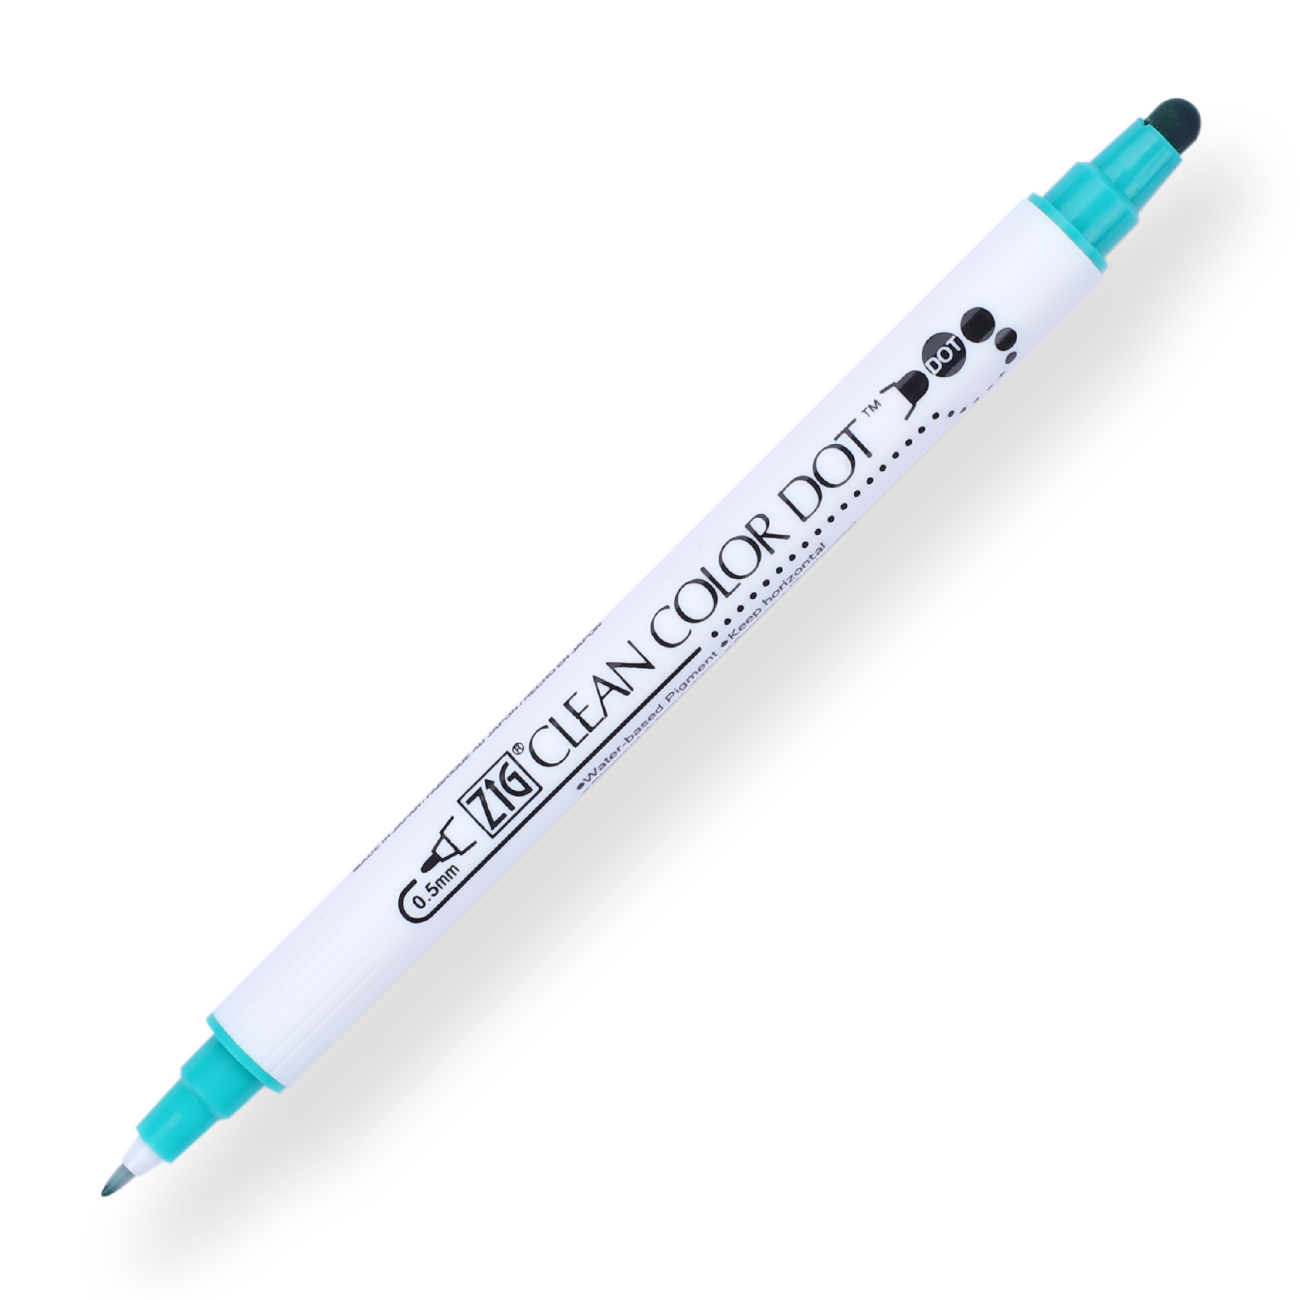 Kuretake ZIG Clean Color Dot Double-Sided Marker - 12 Color Set